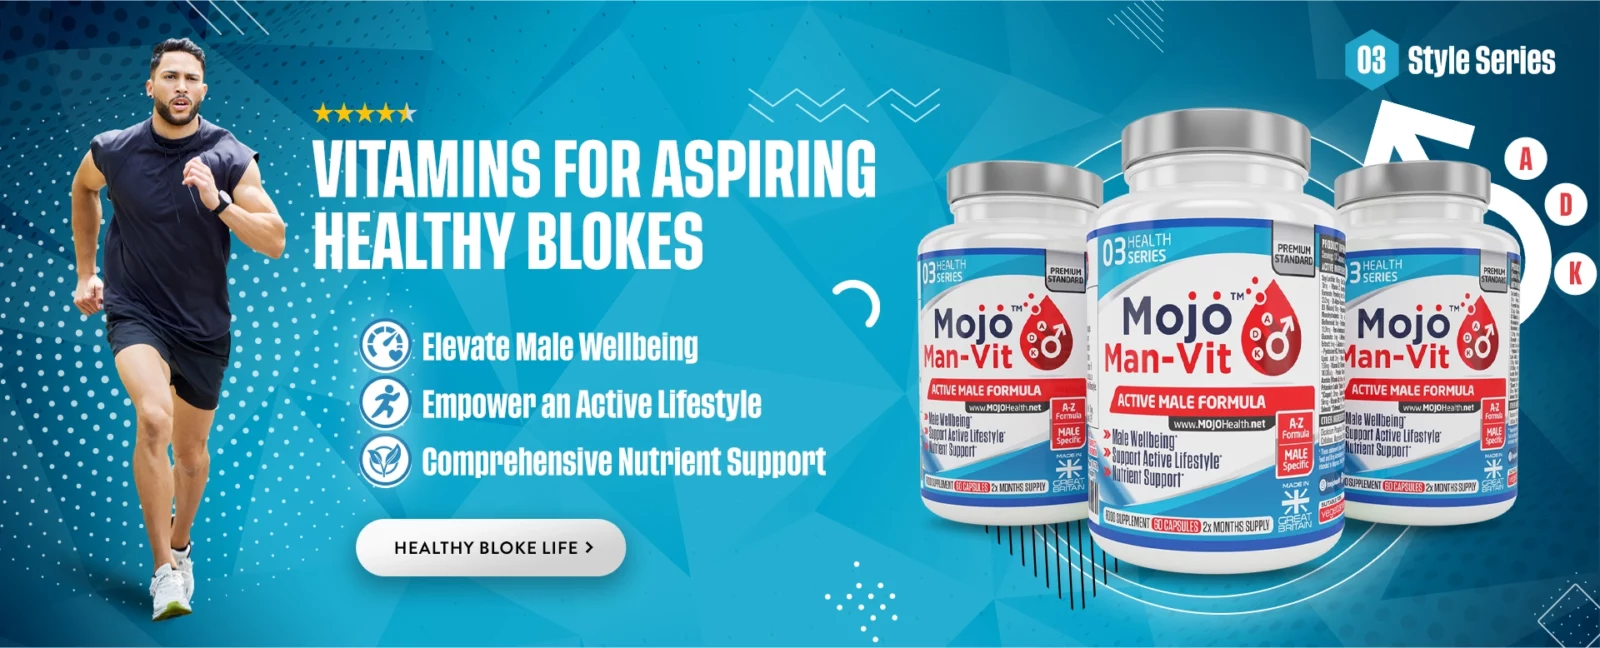 MOJO MAN VIT Best for Men Ultra Mens Optimen Male Multi Vitamin Vitamins UK Supplements